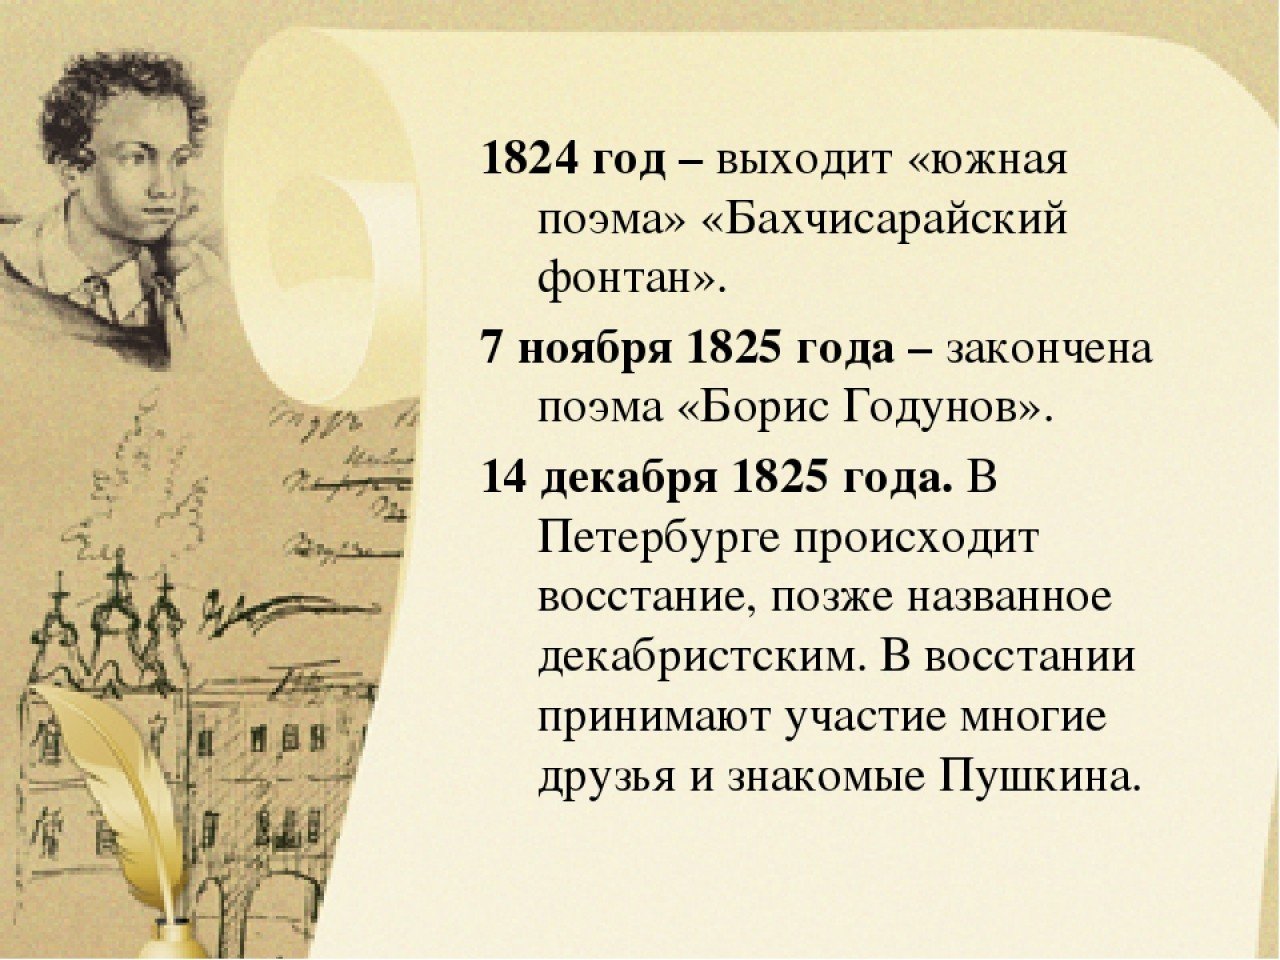 Пушкин презентация